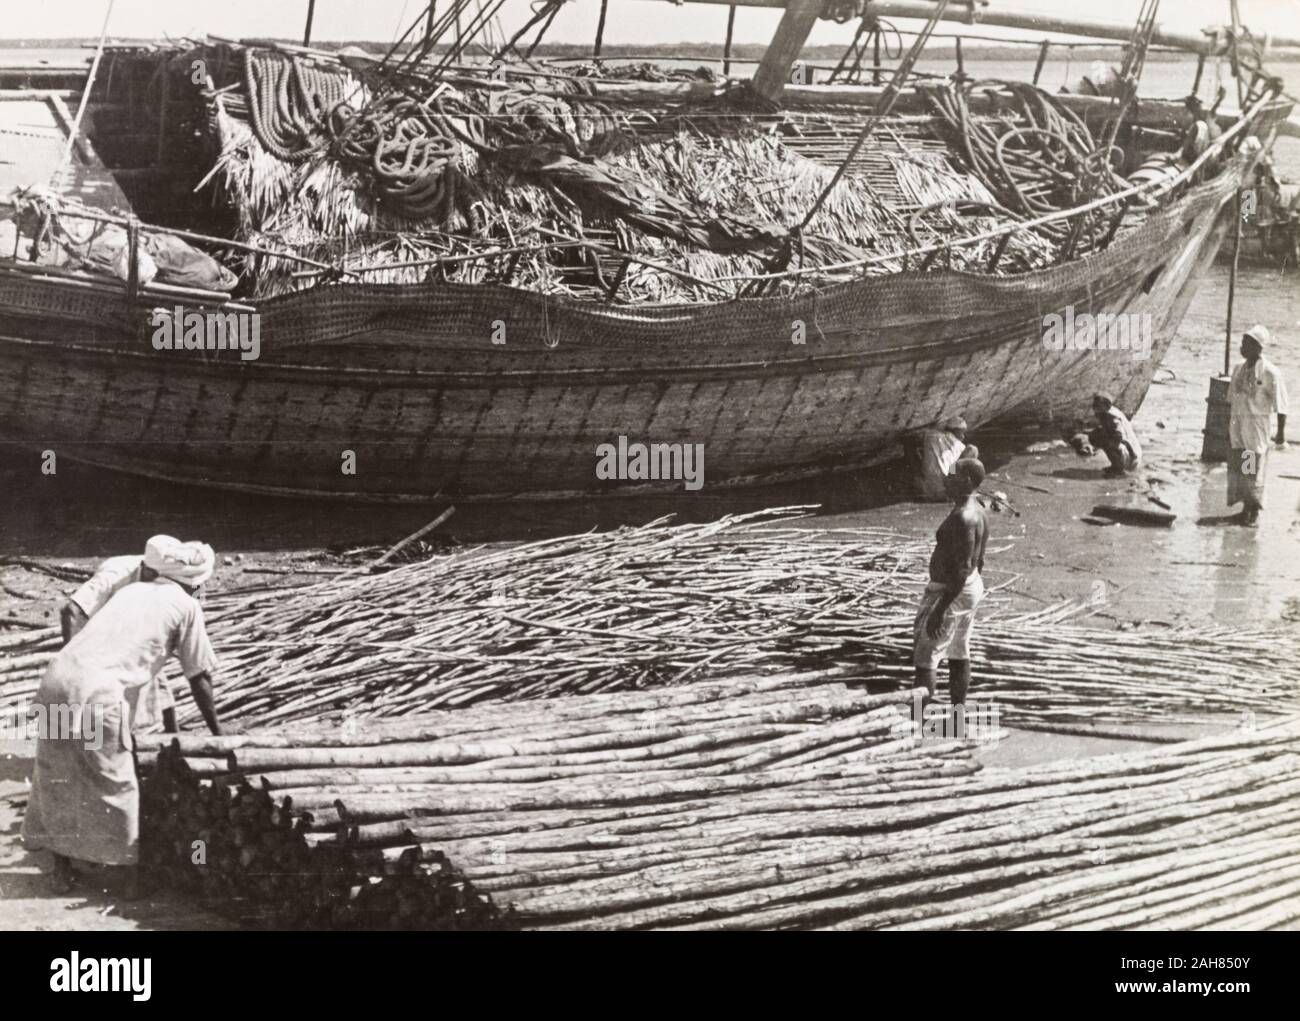 Kenia, Männer laden Mangroven Pole auf einem Dhau auf Lamu, bereit für den Export an den Persischen Golf. Originalmanuskript Bildunterschrift: Lamu - Laden Mangroven Pole, die Ausfuhr von der Insel, auf einem dhau, das sie an den Persischen Golf wenn der Monsun weht - ein Handel, der kaum für mindestens 1.000 Jahre, 1947 verändert hat. 1995/076/1/2/7/8. Stockfoto